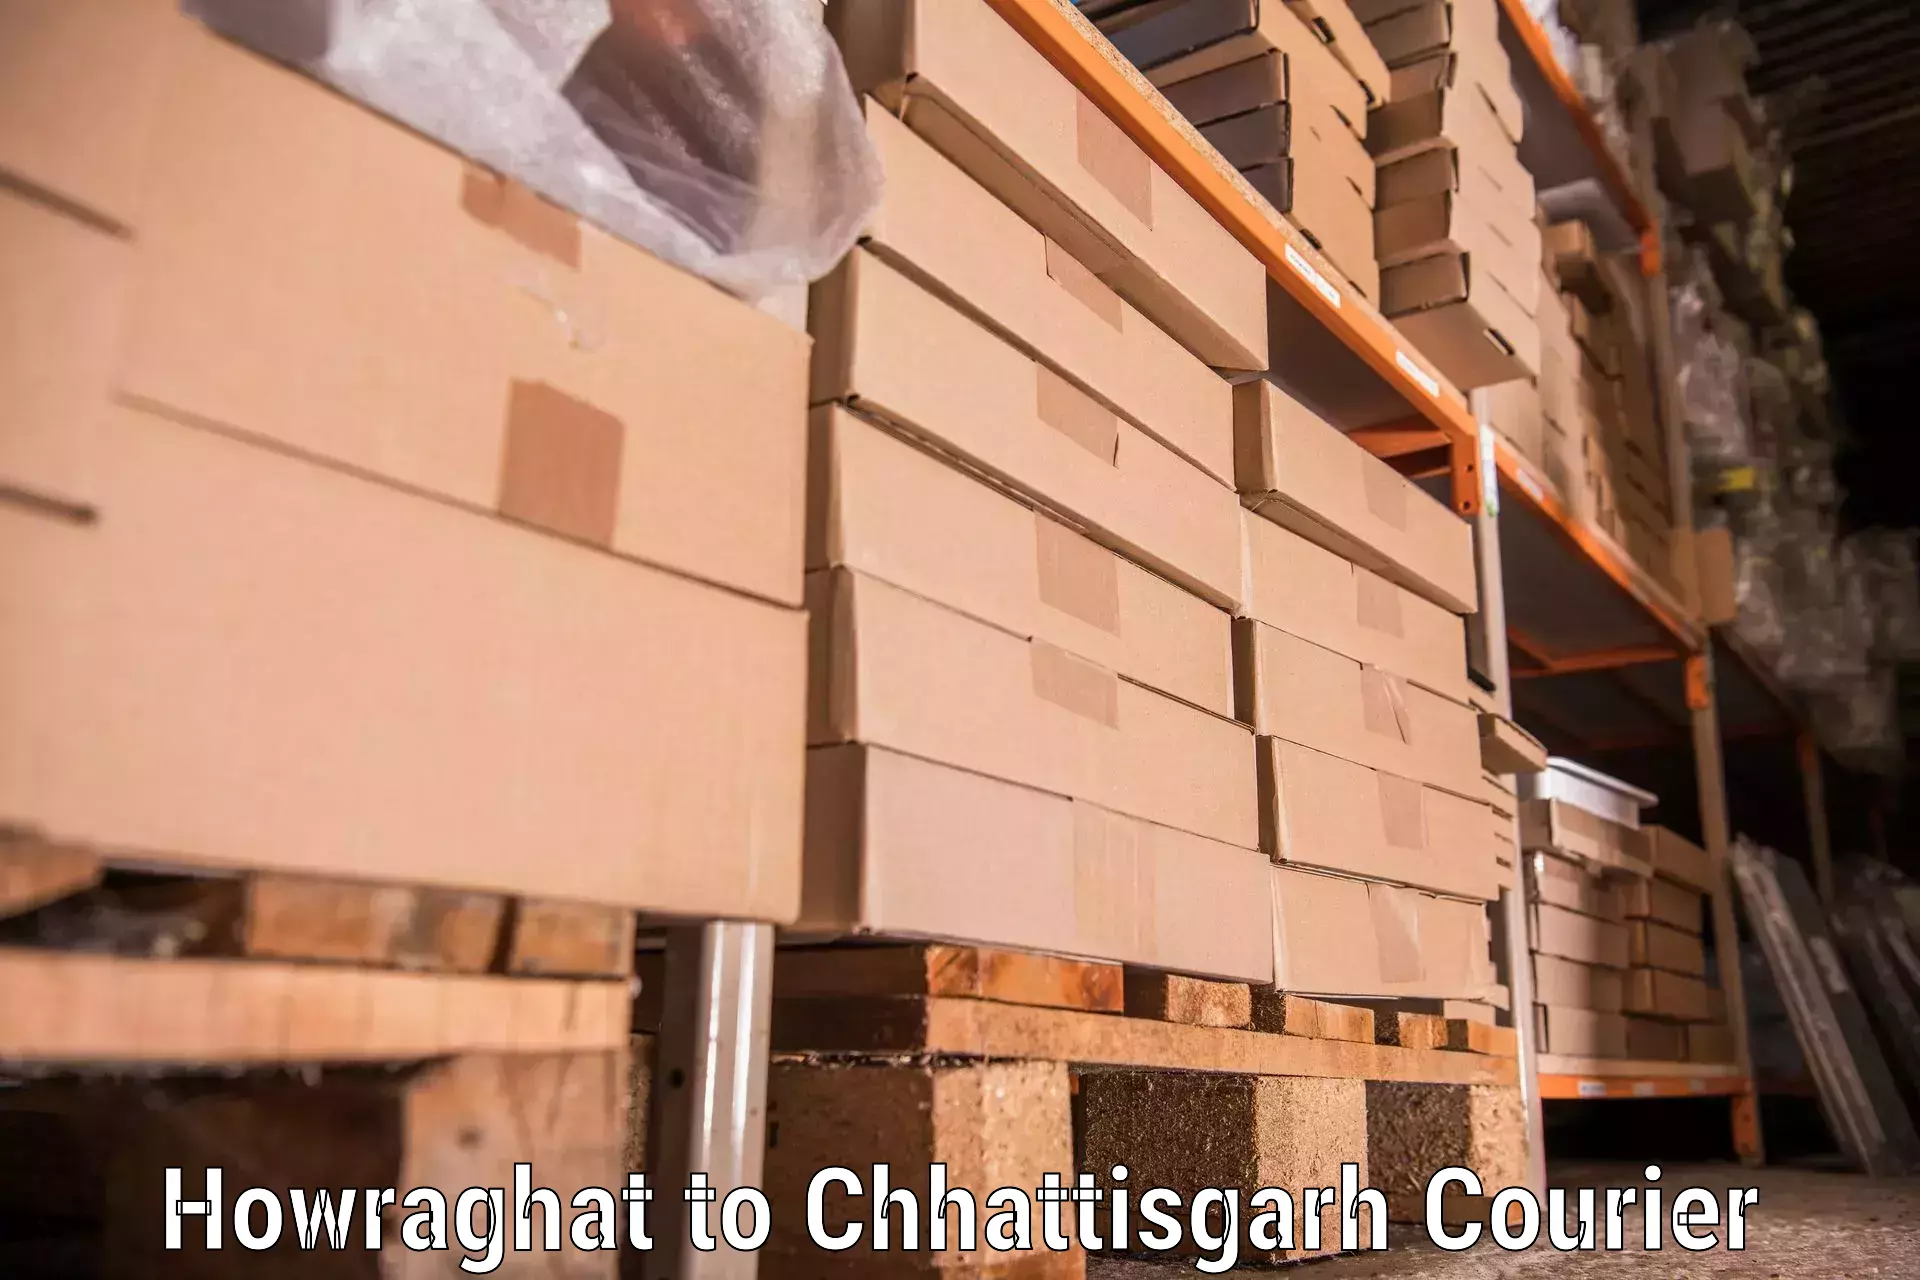 Residential moving experts Howraghat to Chhattisgarh